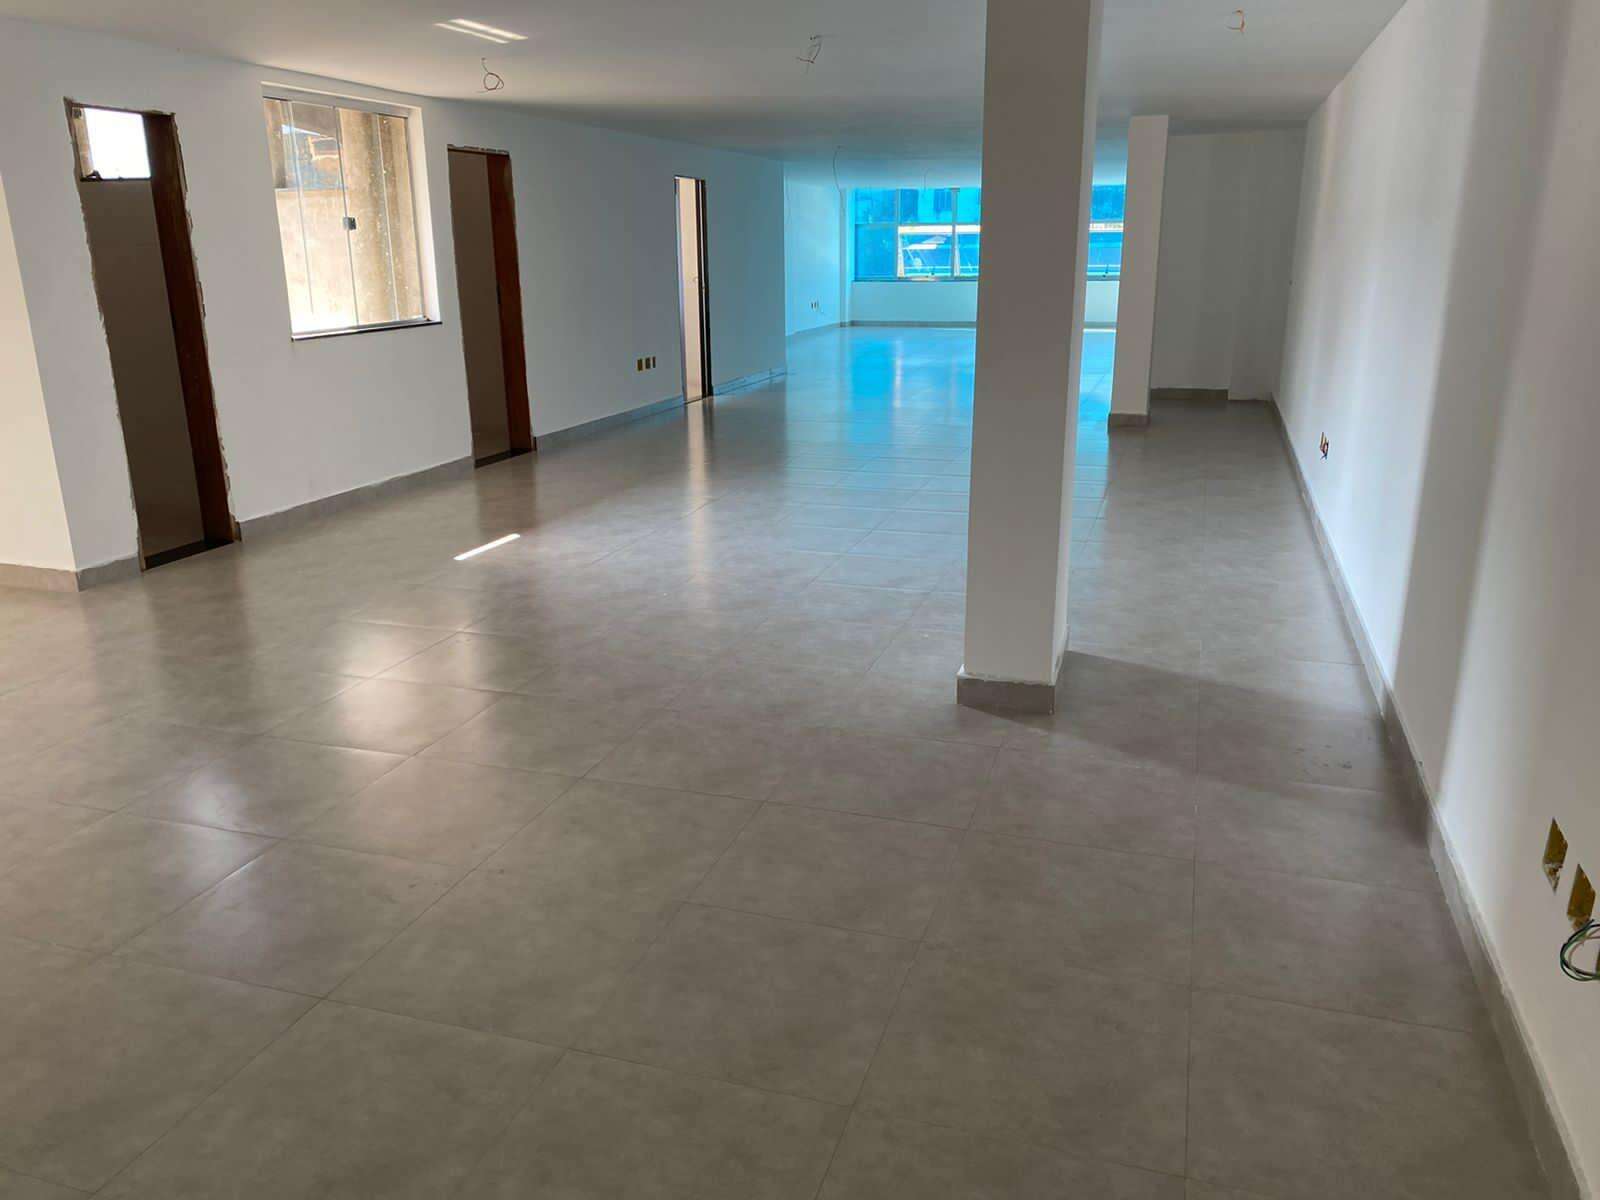 Sala para aluguel no Centro: c81fc19d-5-whatsapp-image-2021-09-29-at-15.52.11.jpeg